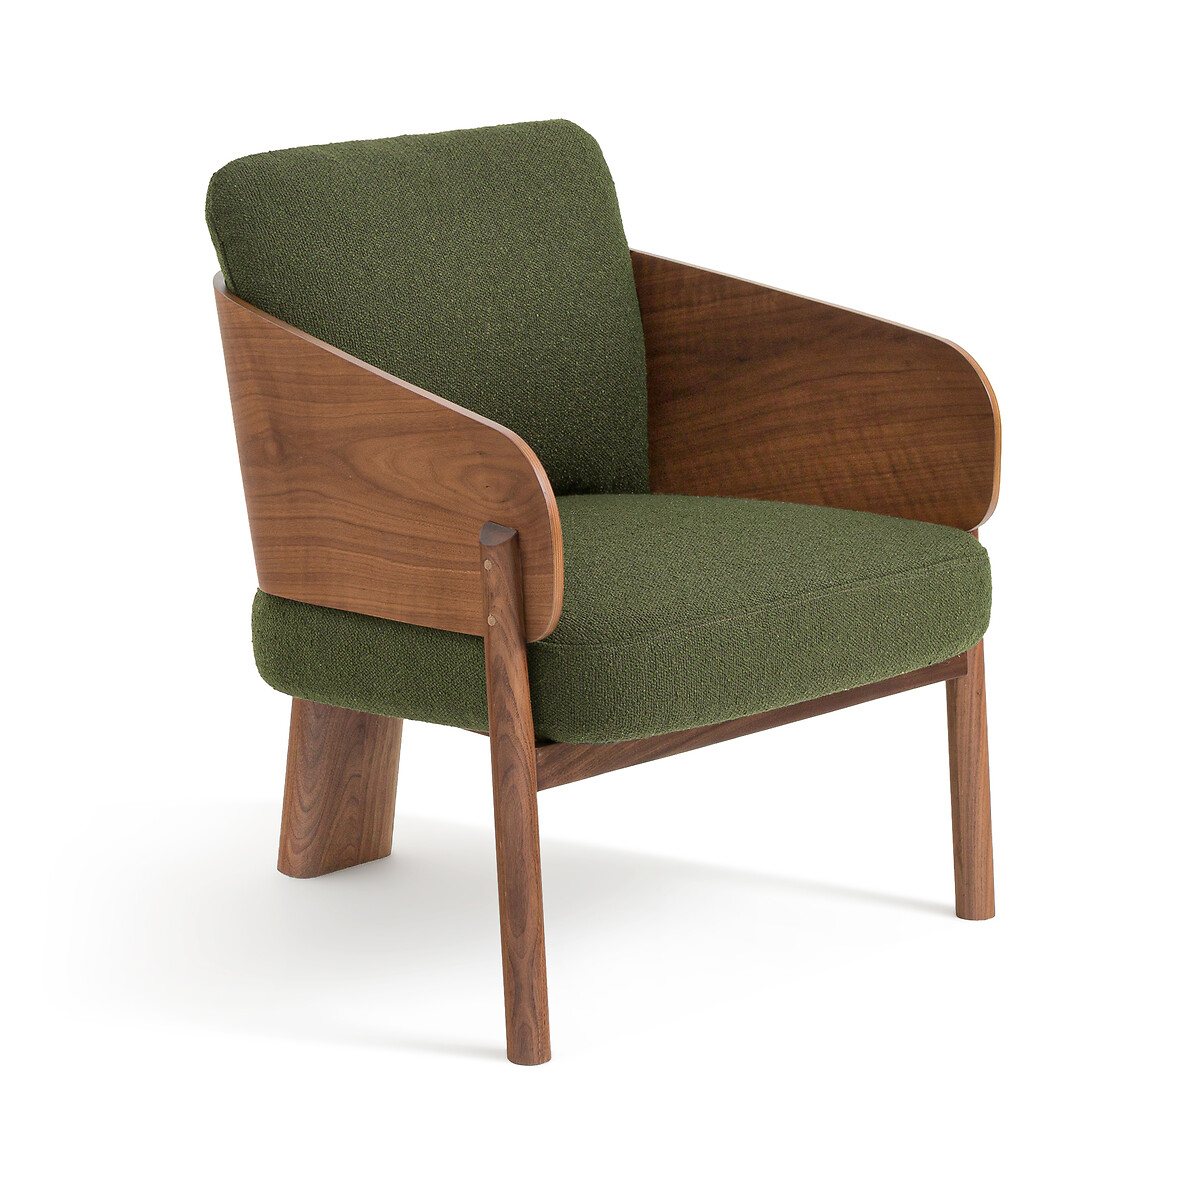 Кресло из орехового дерева ткани букле дизайн Э Галлина Marais единый размер зеленый кресло для столовой marais дизайн э галлина единый размер каштановый